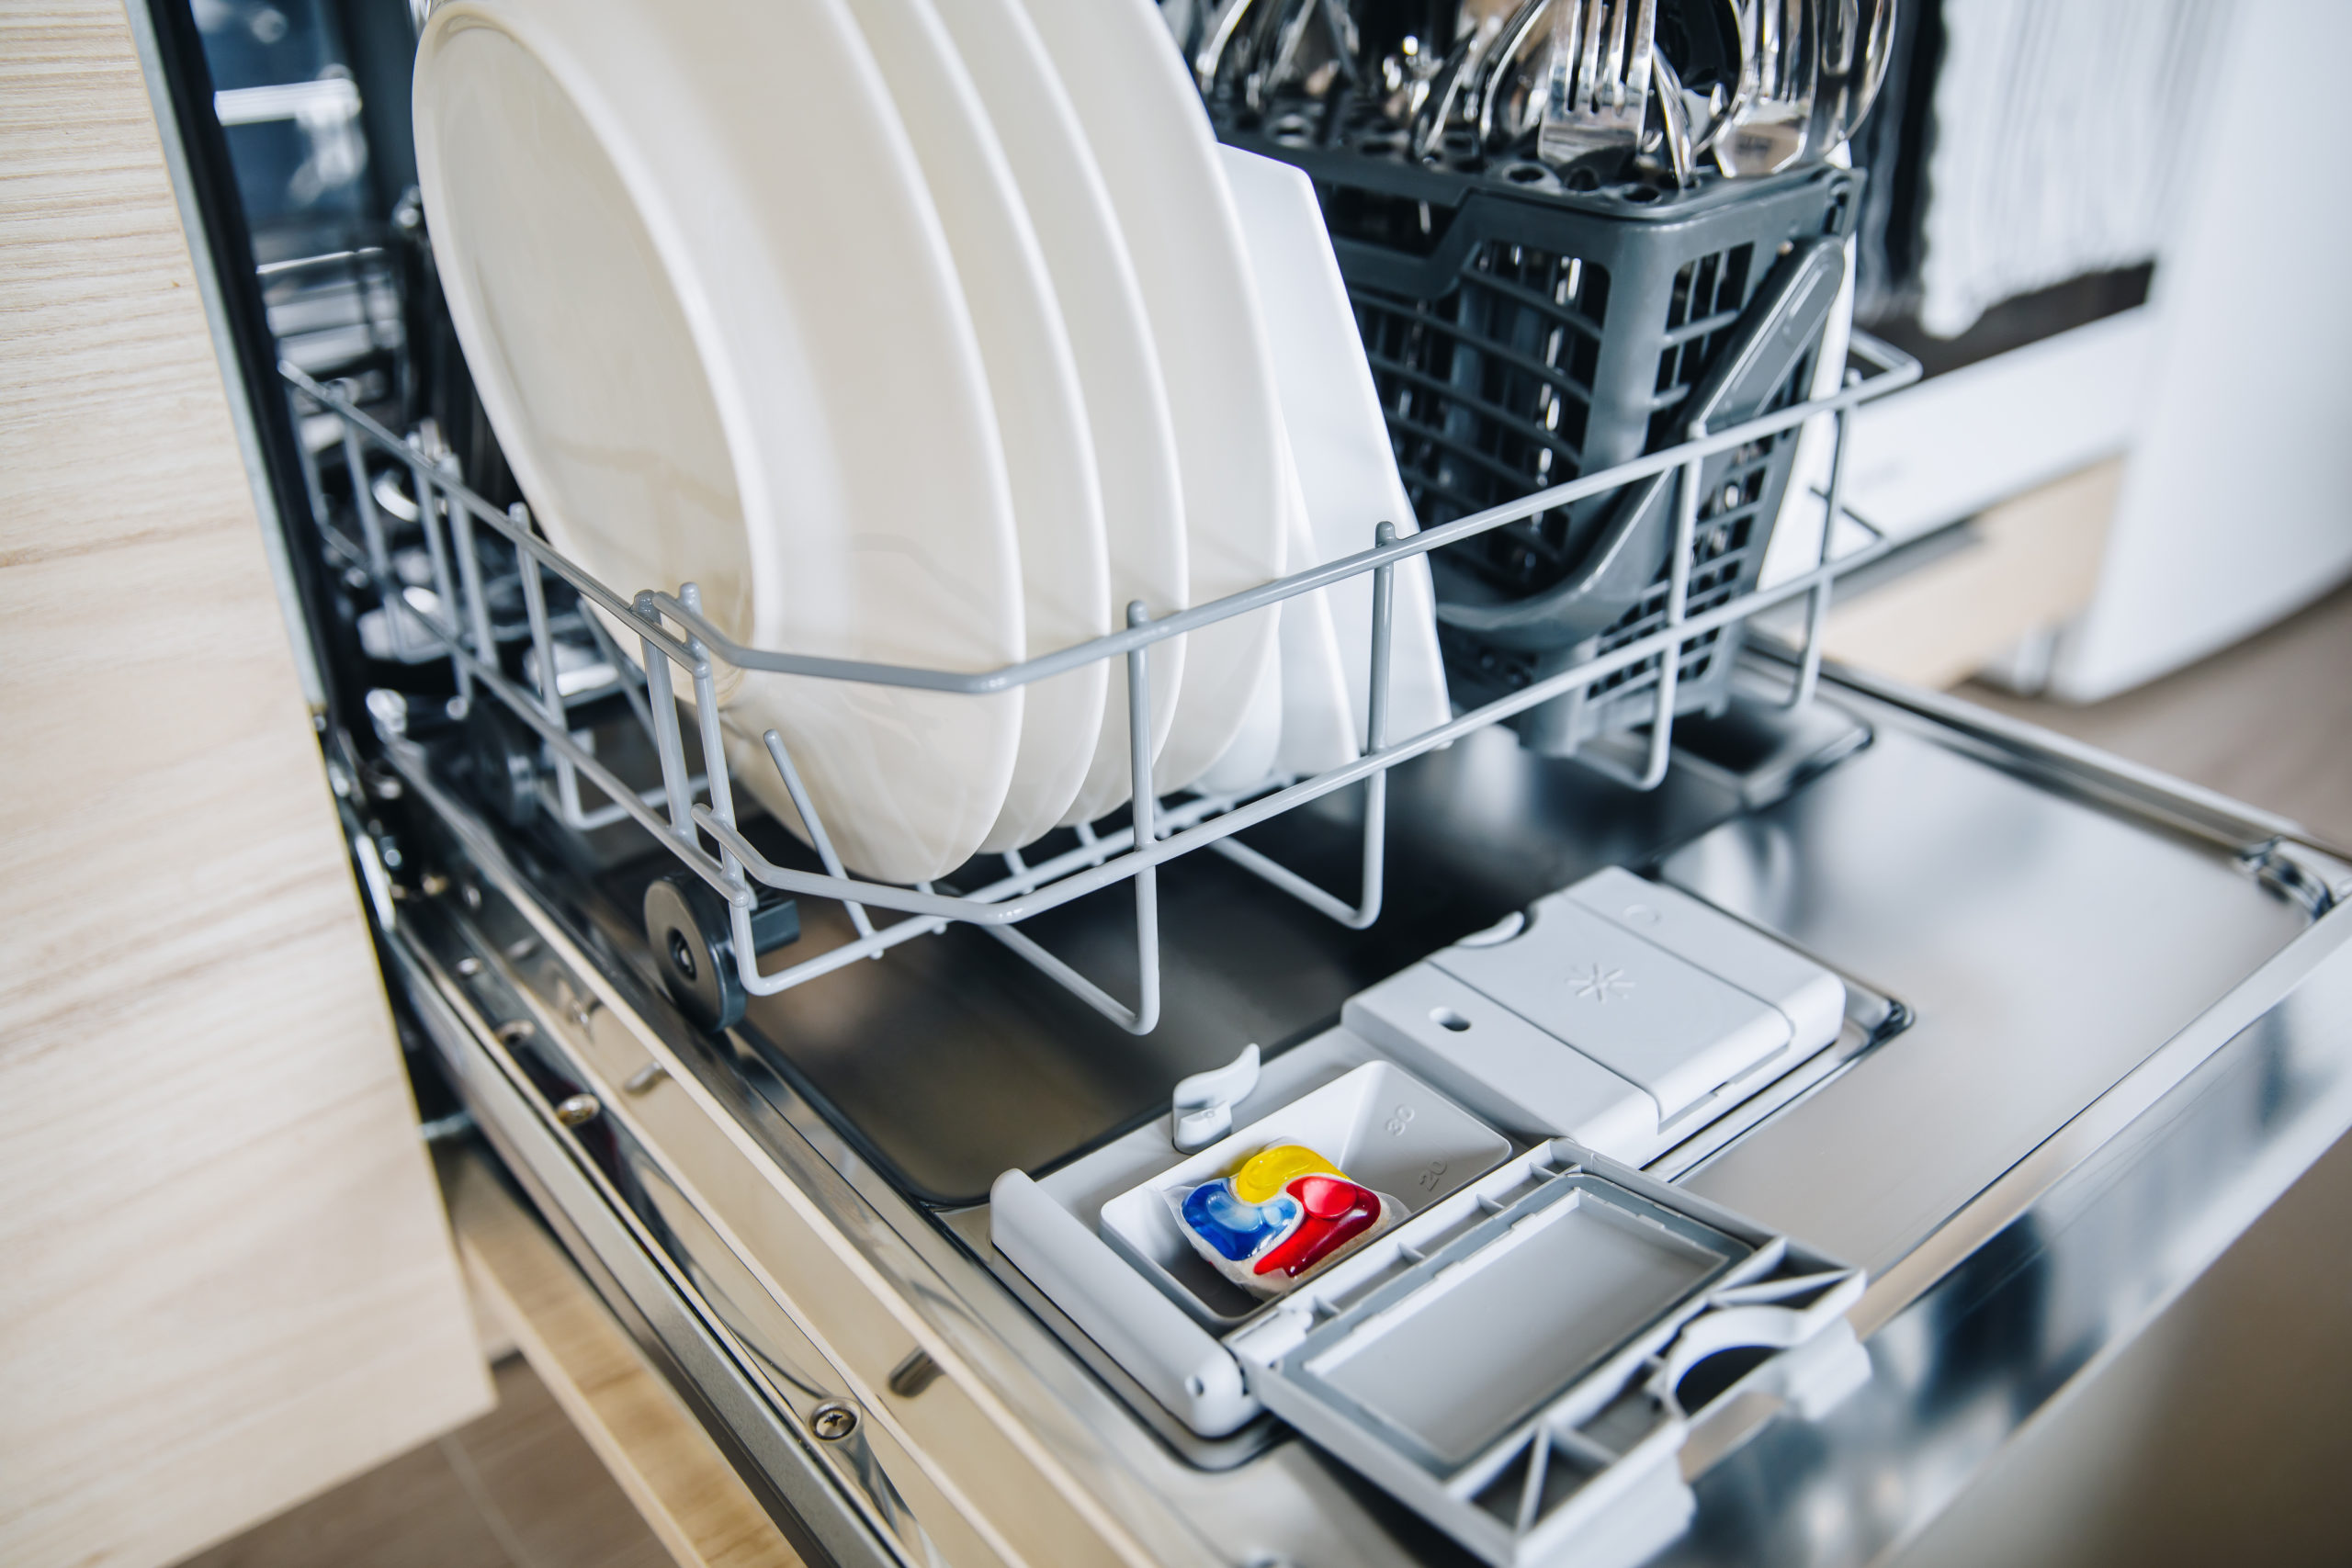 Colorful Dishwasher Detergent Tablet For Dishwashi ZSLM7KG Scaled 